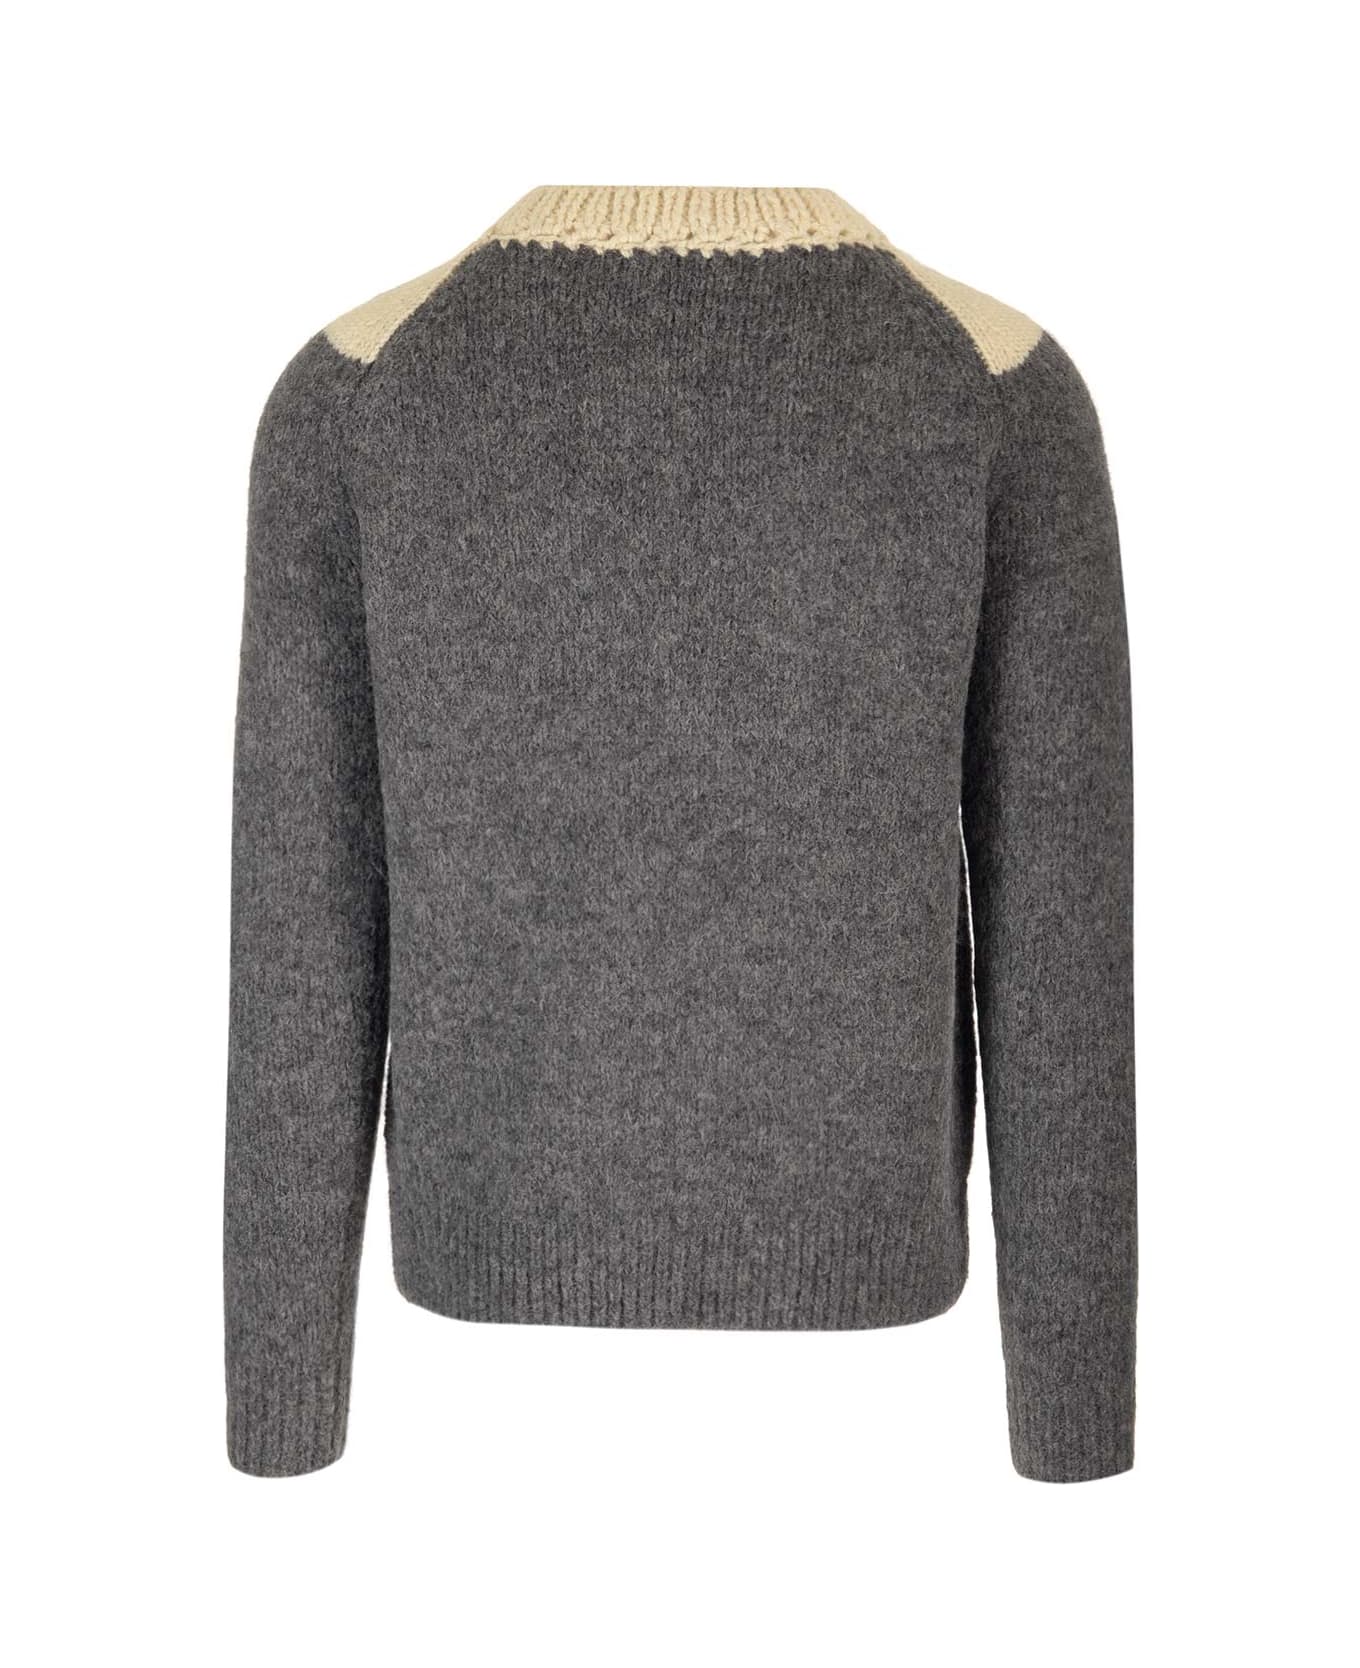 Dries Van Noten 'morgan' Crewneck Sweater - Grey